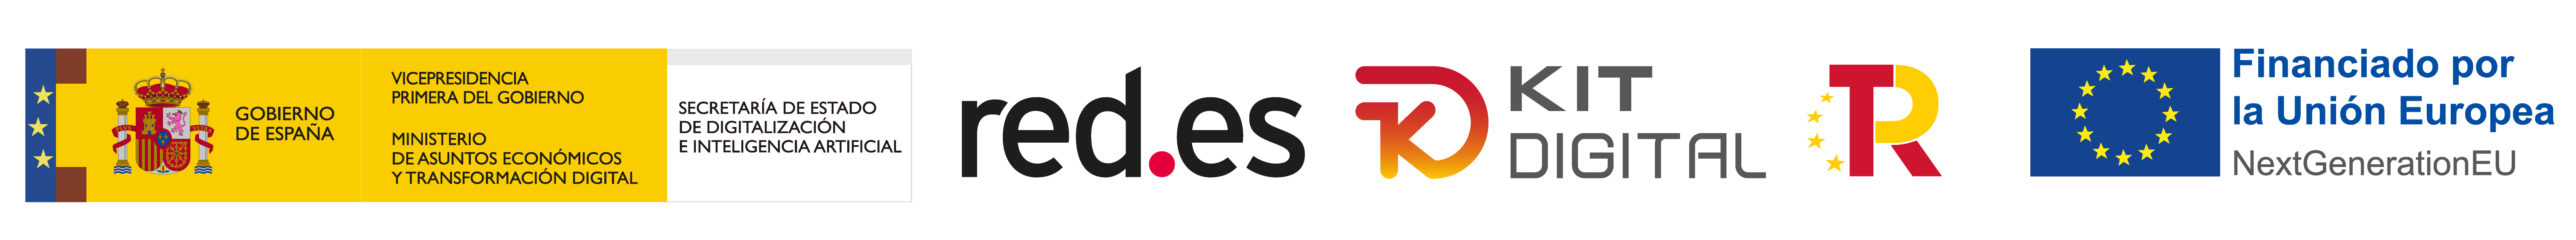 logos red.es